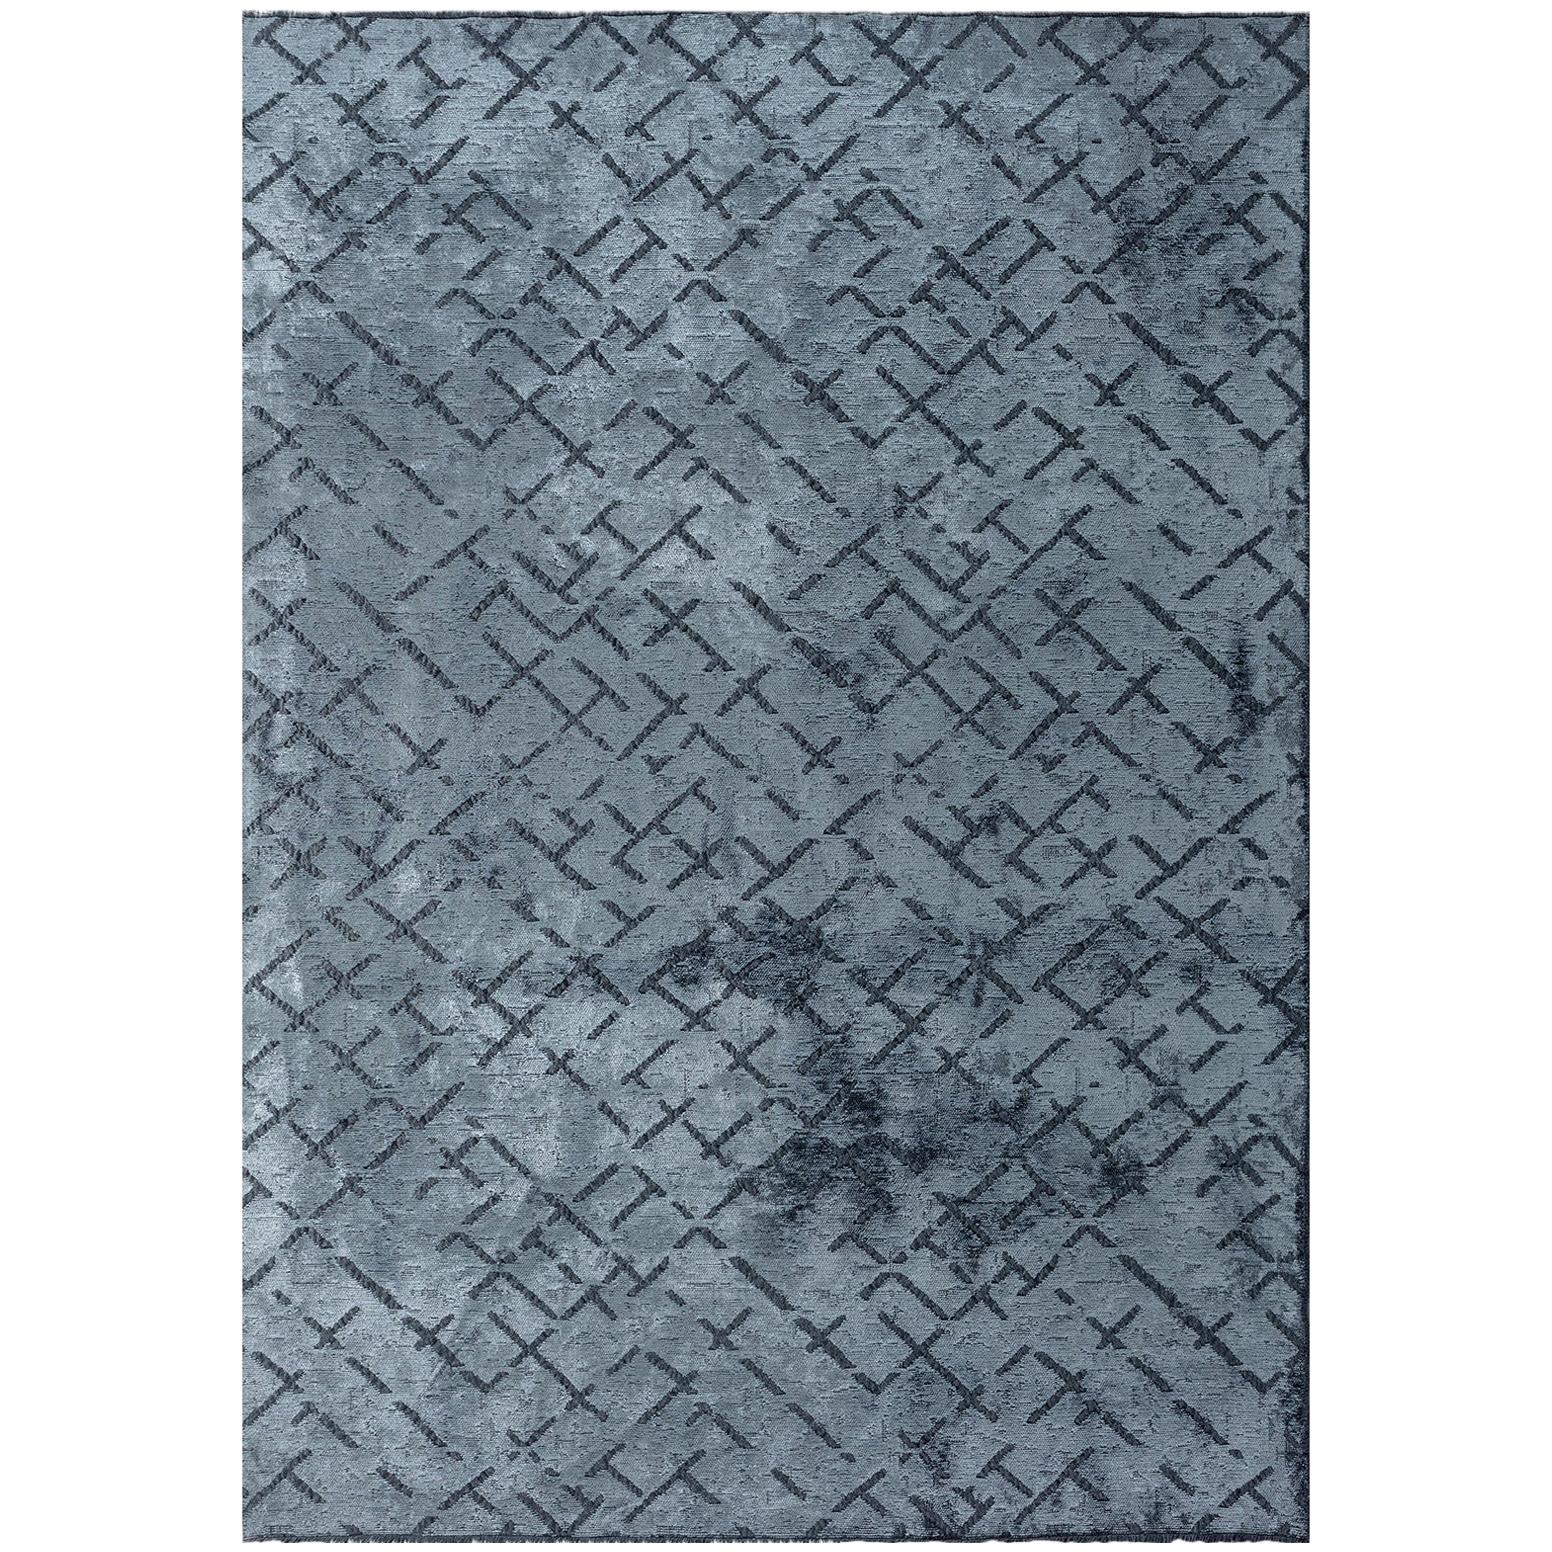 Tapis contemporain bleu clair à motif répétitif abstrait avec ou sans franges